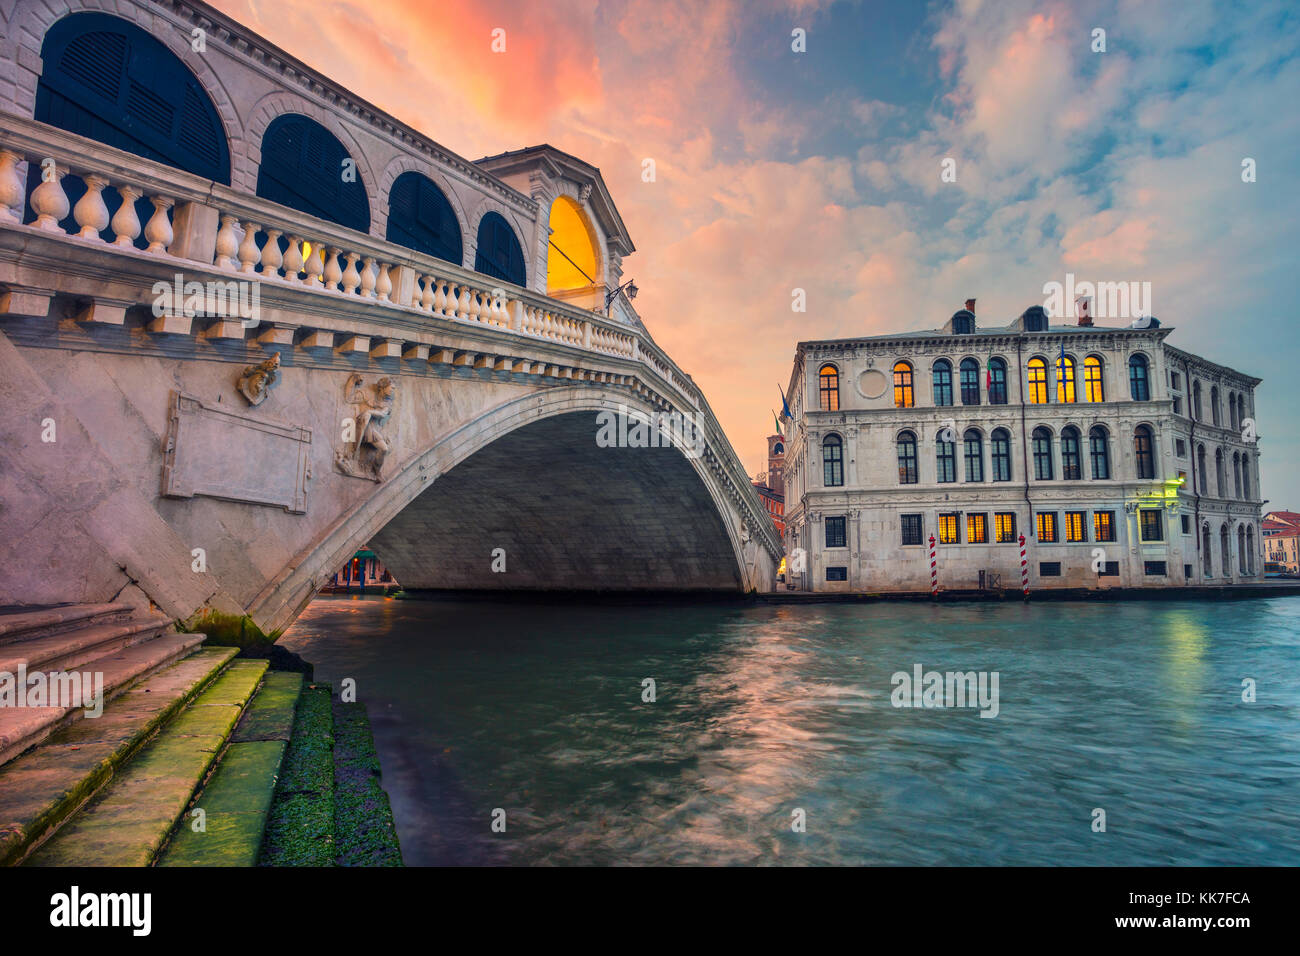 Venezia. cityscape immagine di Venezia con il famoso ponte di rialto e il canal grande. Foto Stock